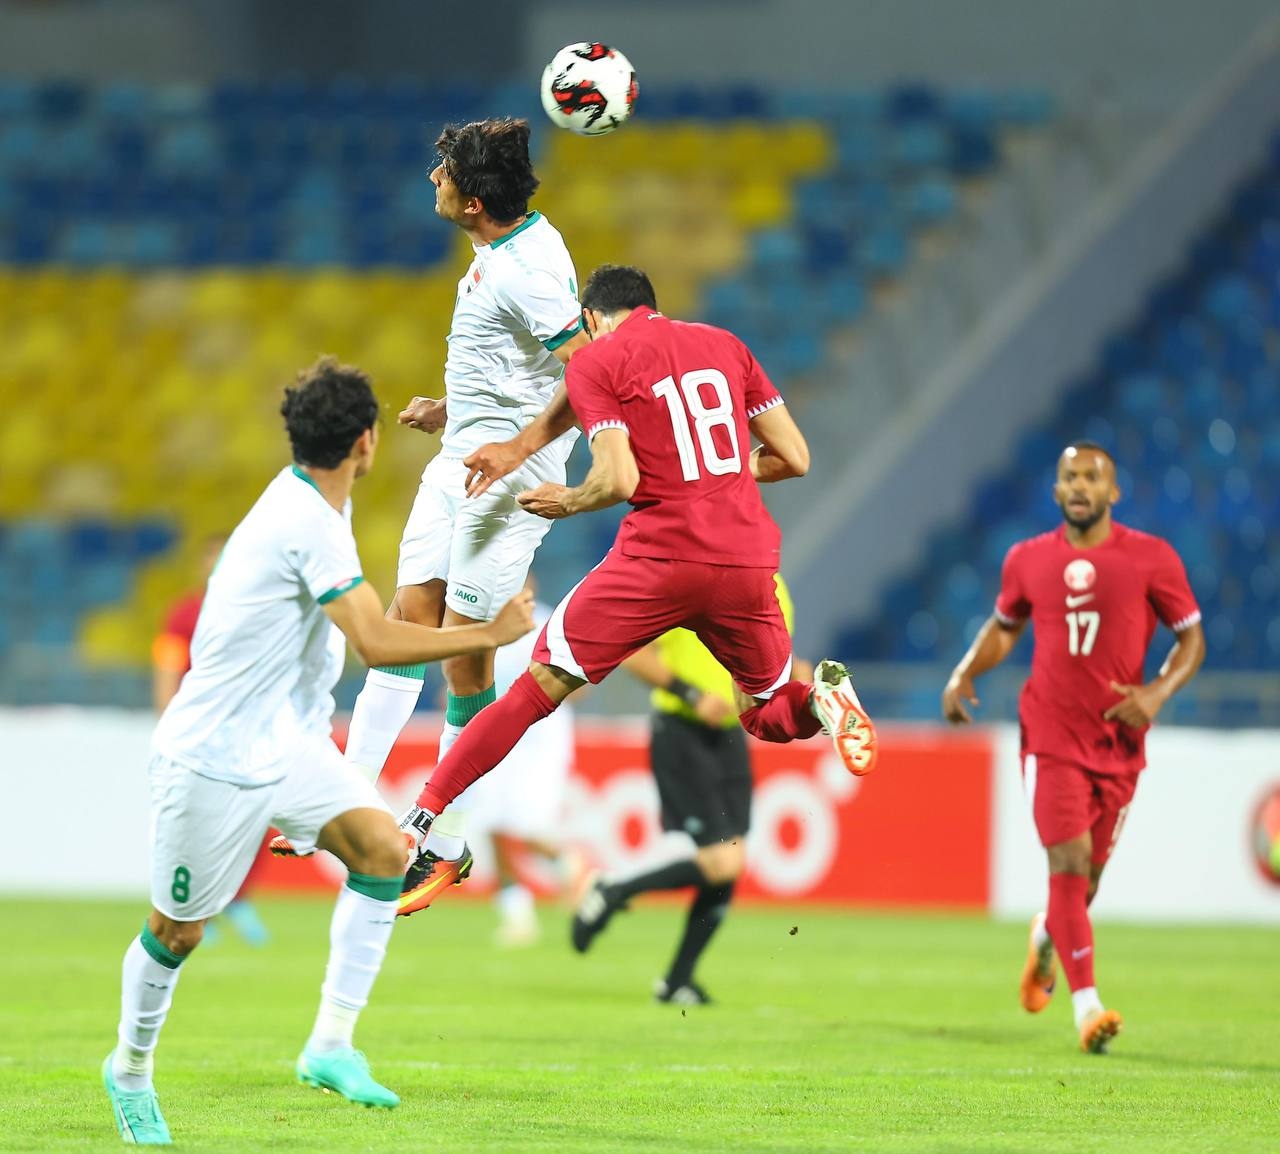 المنتخب الوطني يفقد فرصة لقب بطولة الاردن الدولية امام قطر